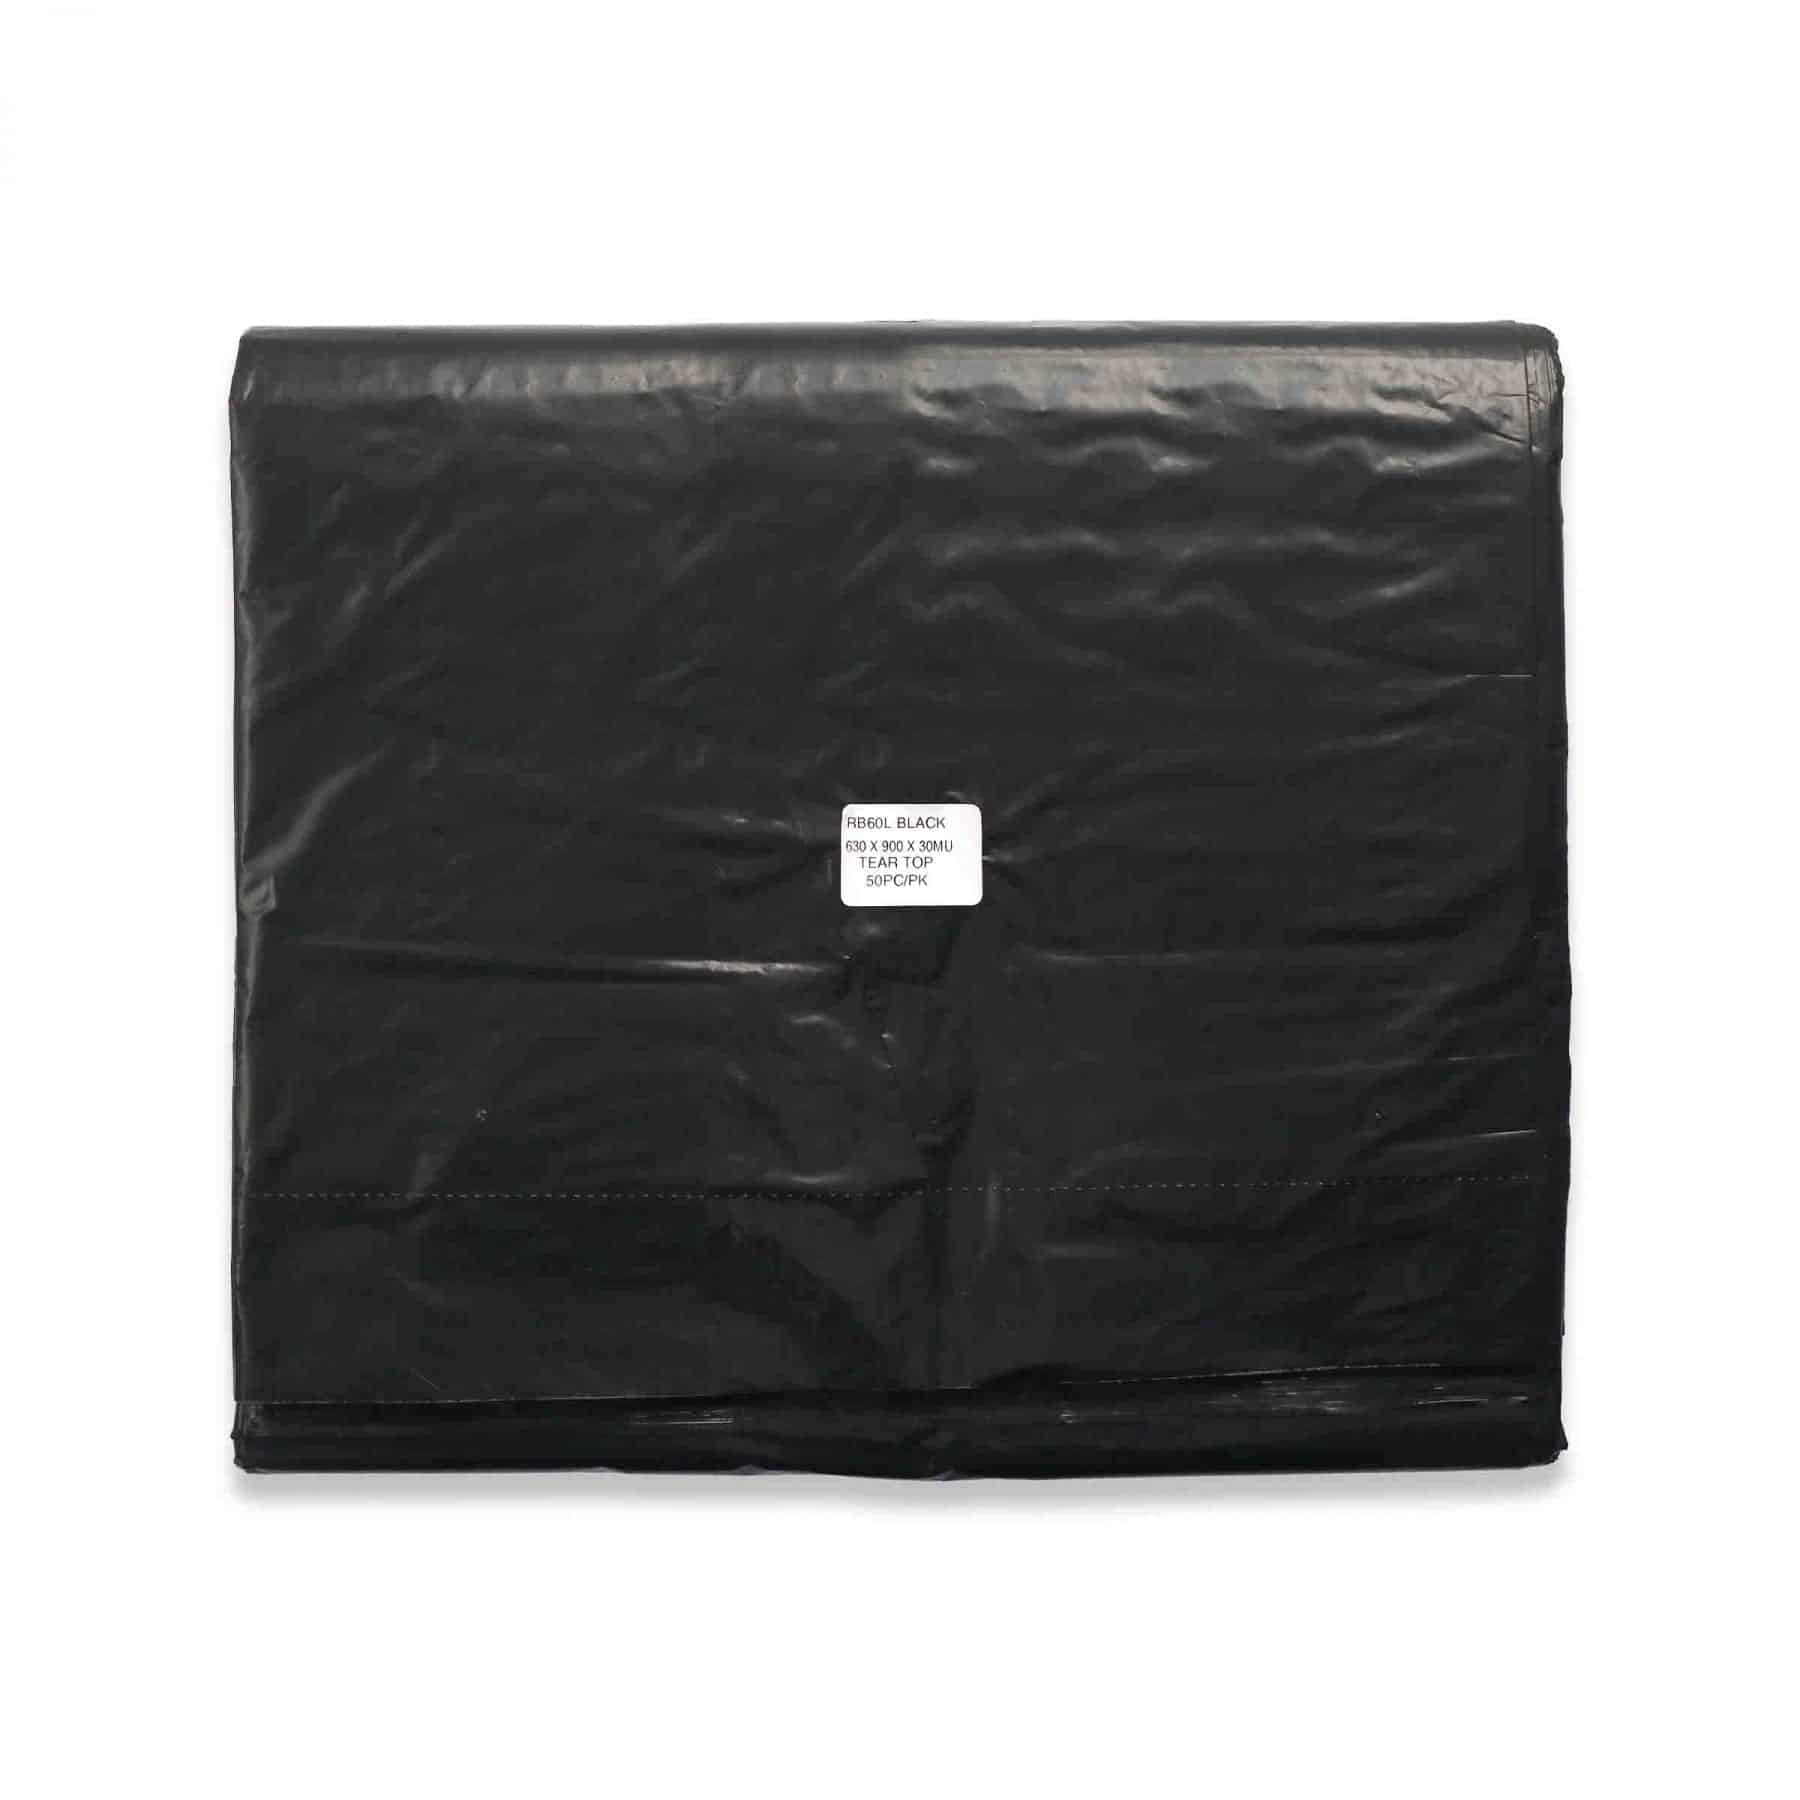 Black 60L Rubbish Bags 50pk